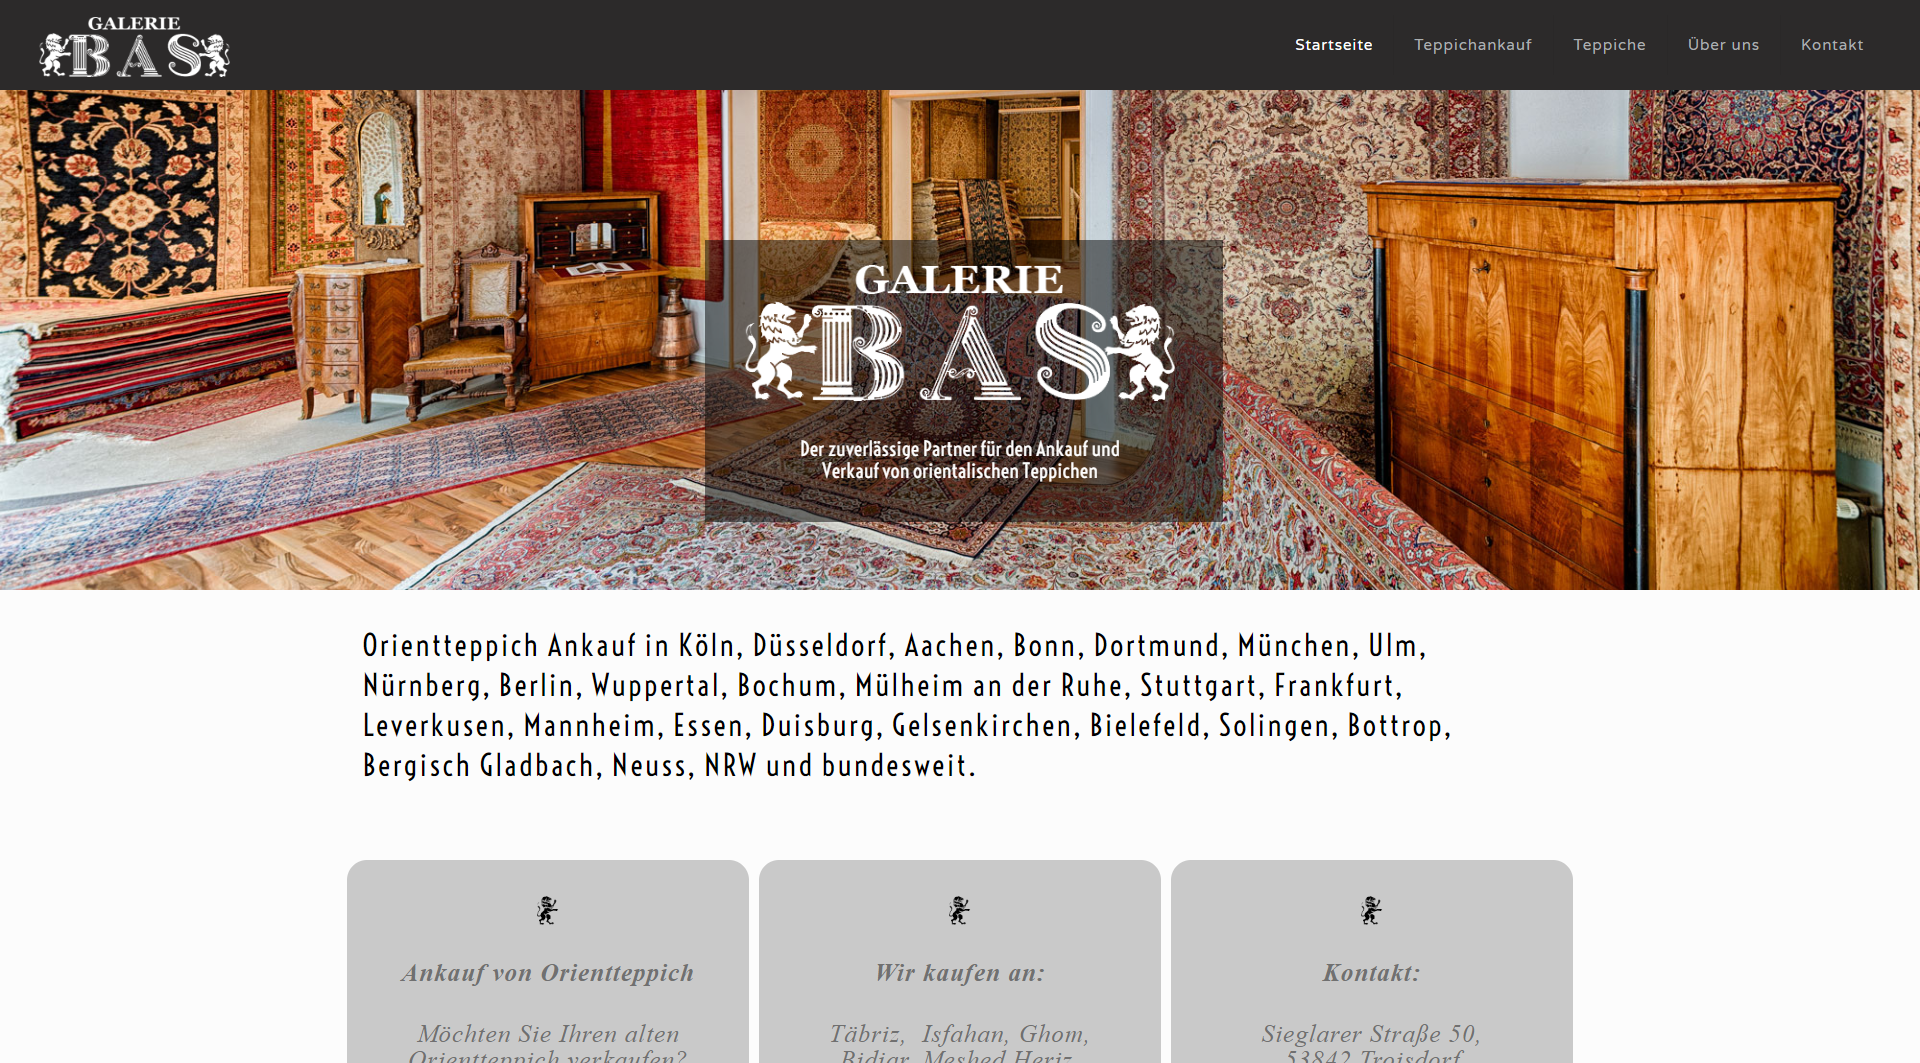 Hier sollte die Startansicht der Webseite der Galerie BAS zu sehen sein...sorry.